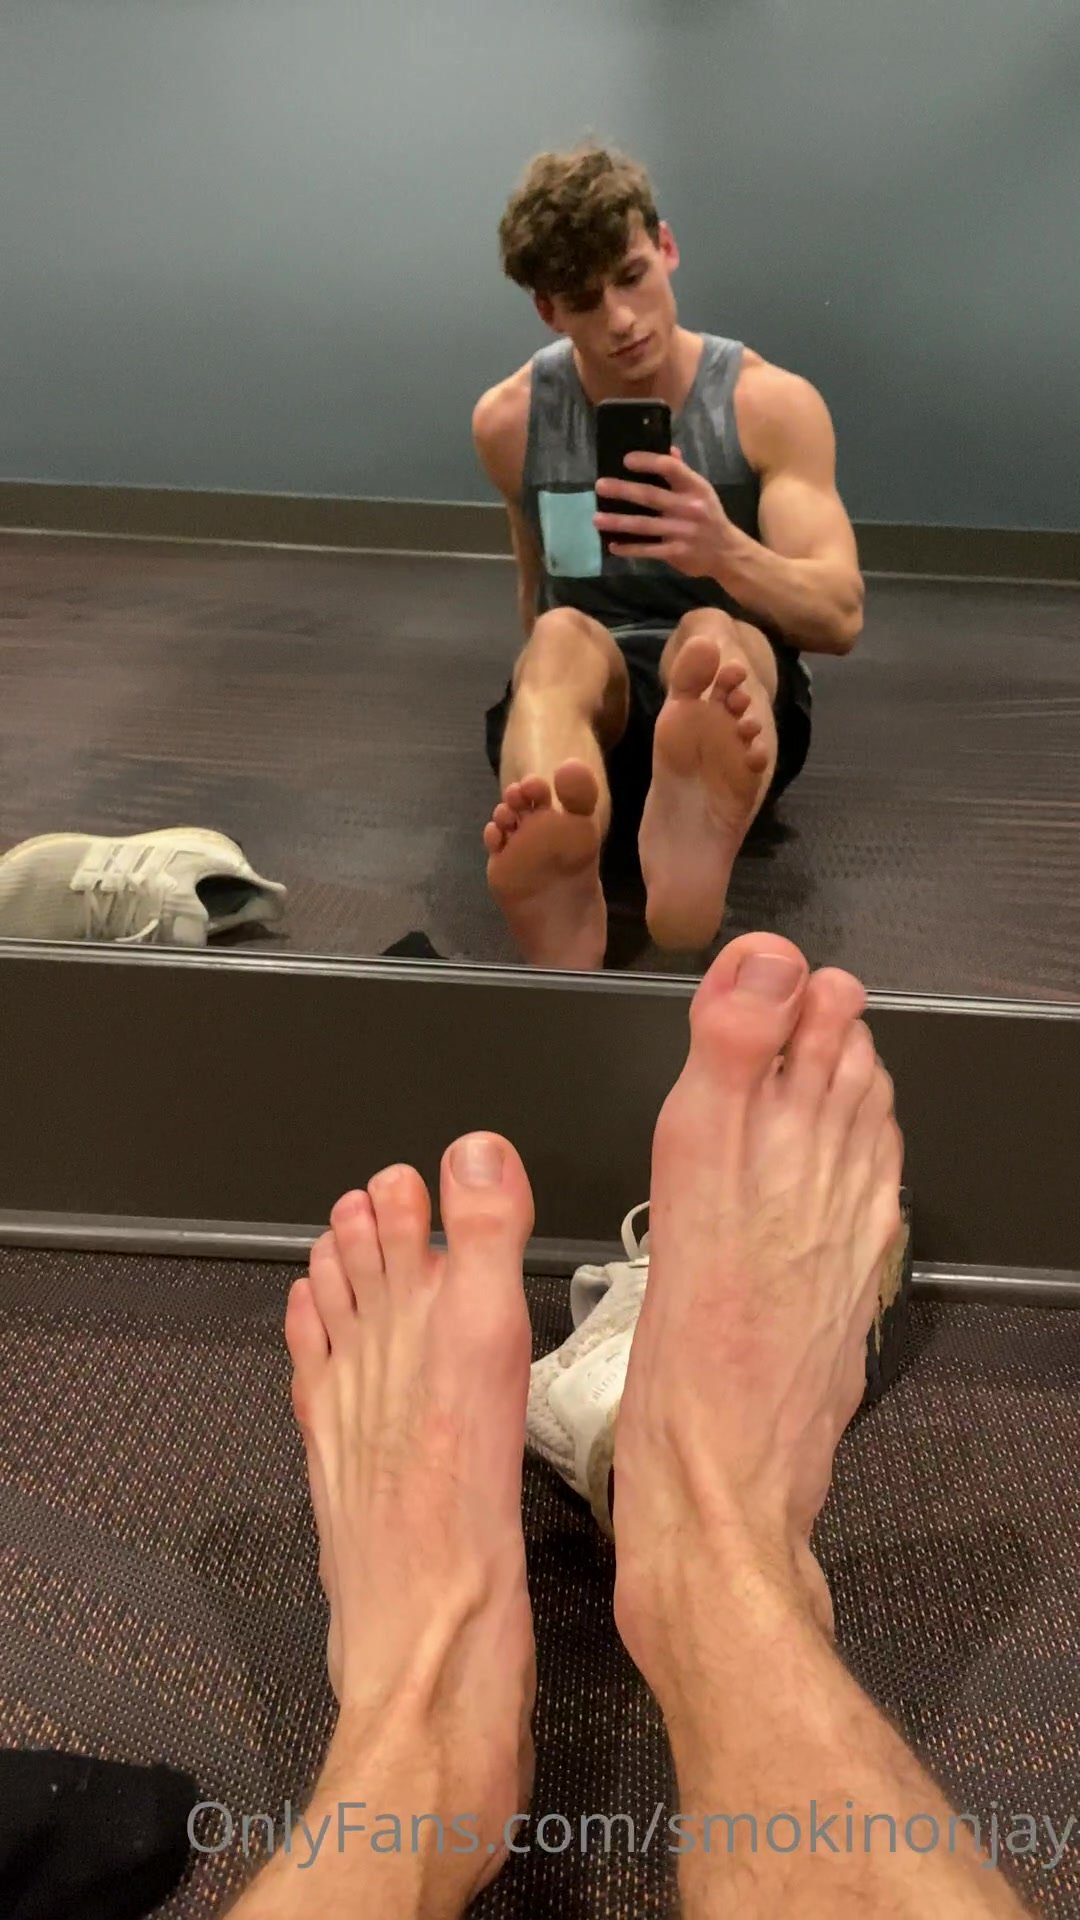 Male feet worship videos